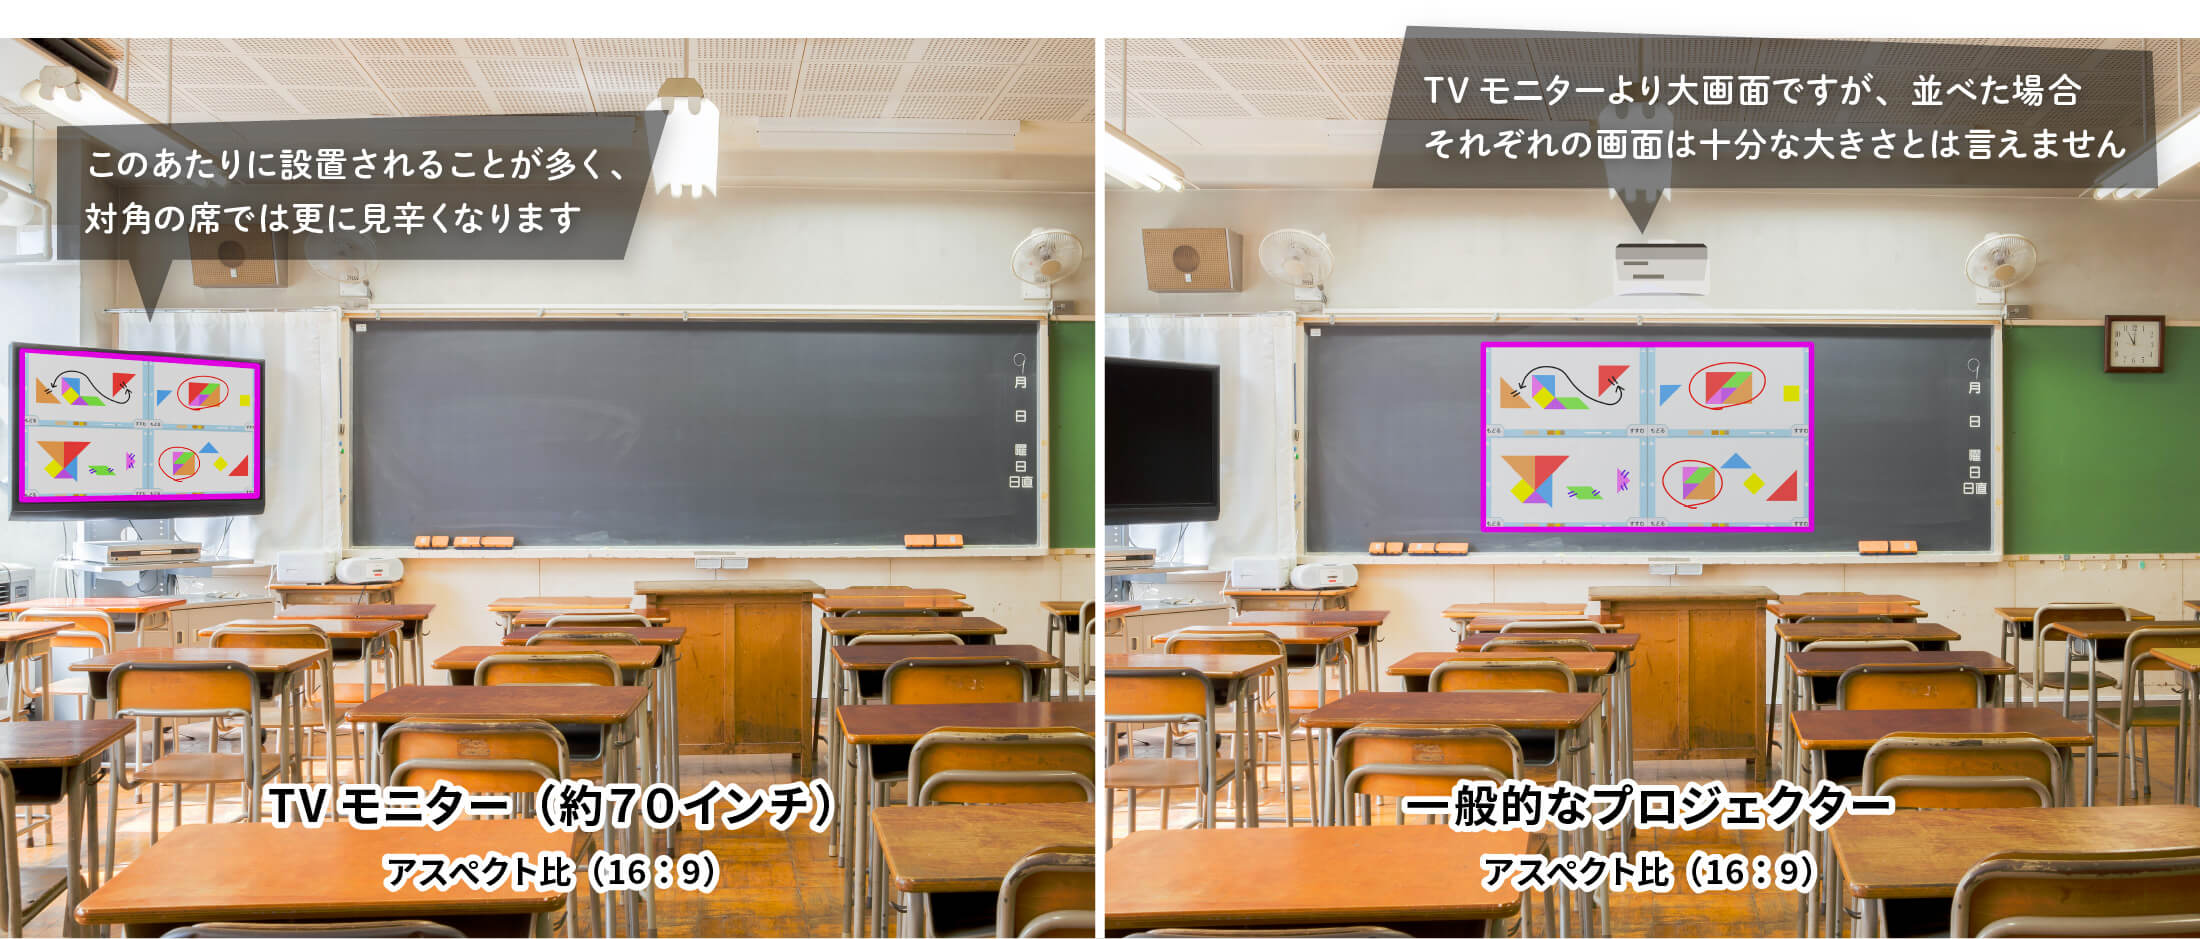 一般的に教室で使用されているTVモニター、プロジェクターで４つの画面を並べた際の投影サイズ イメージ